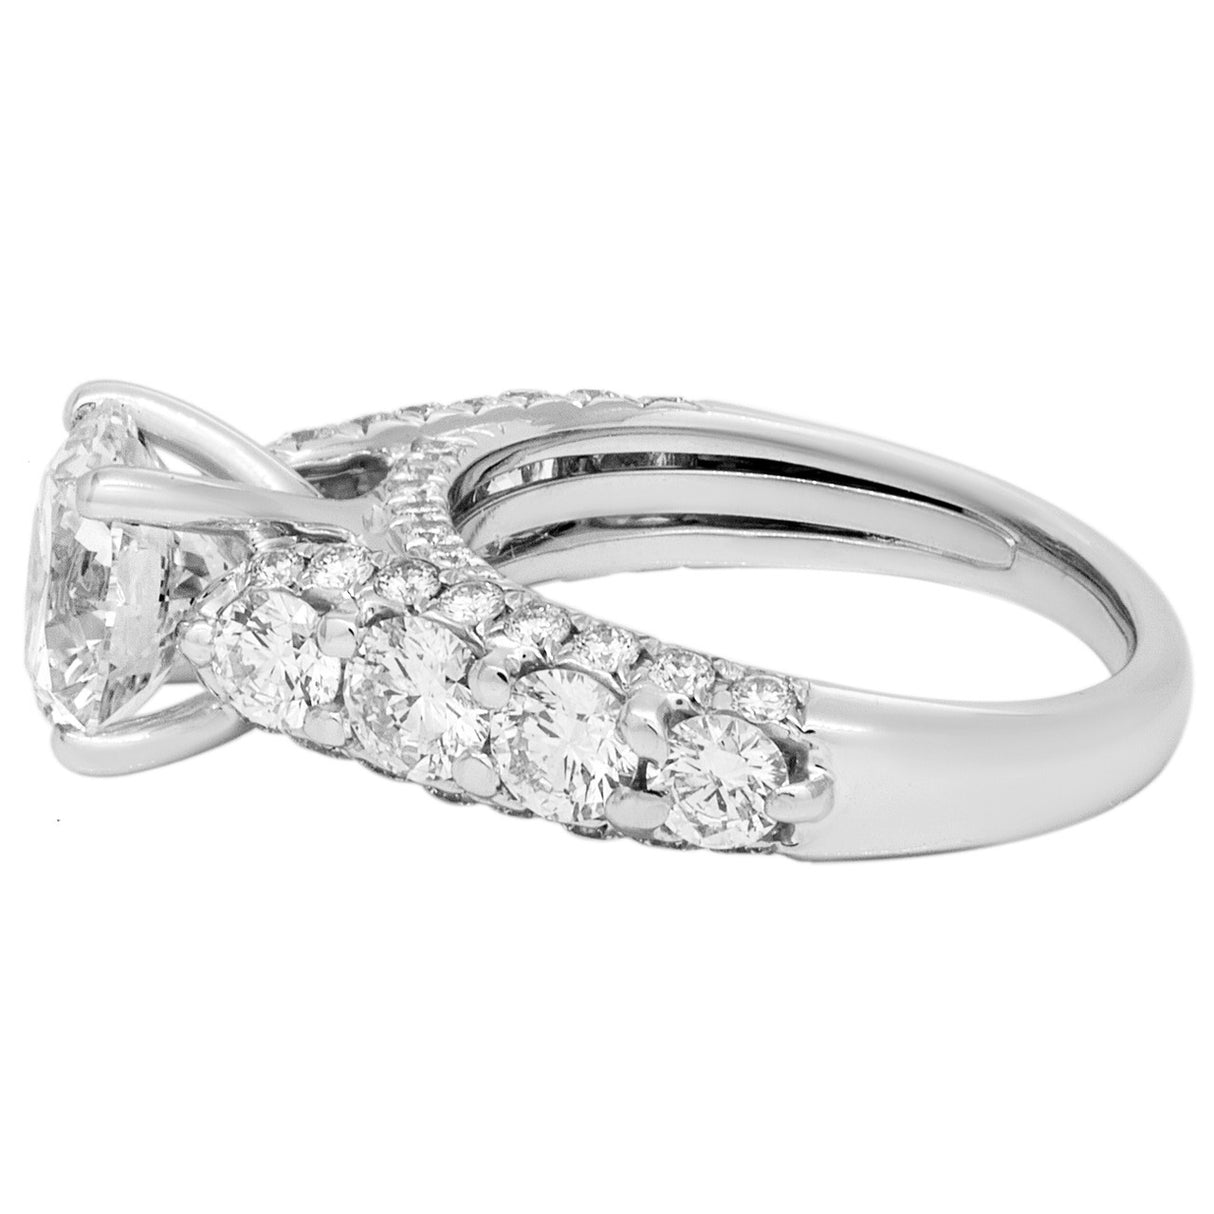 18K White Gold 1.56 Carat Diamond Ring